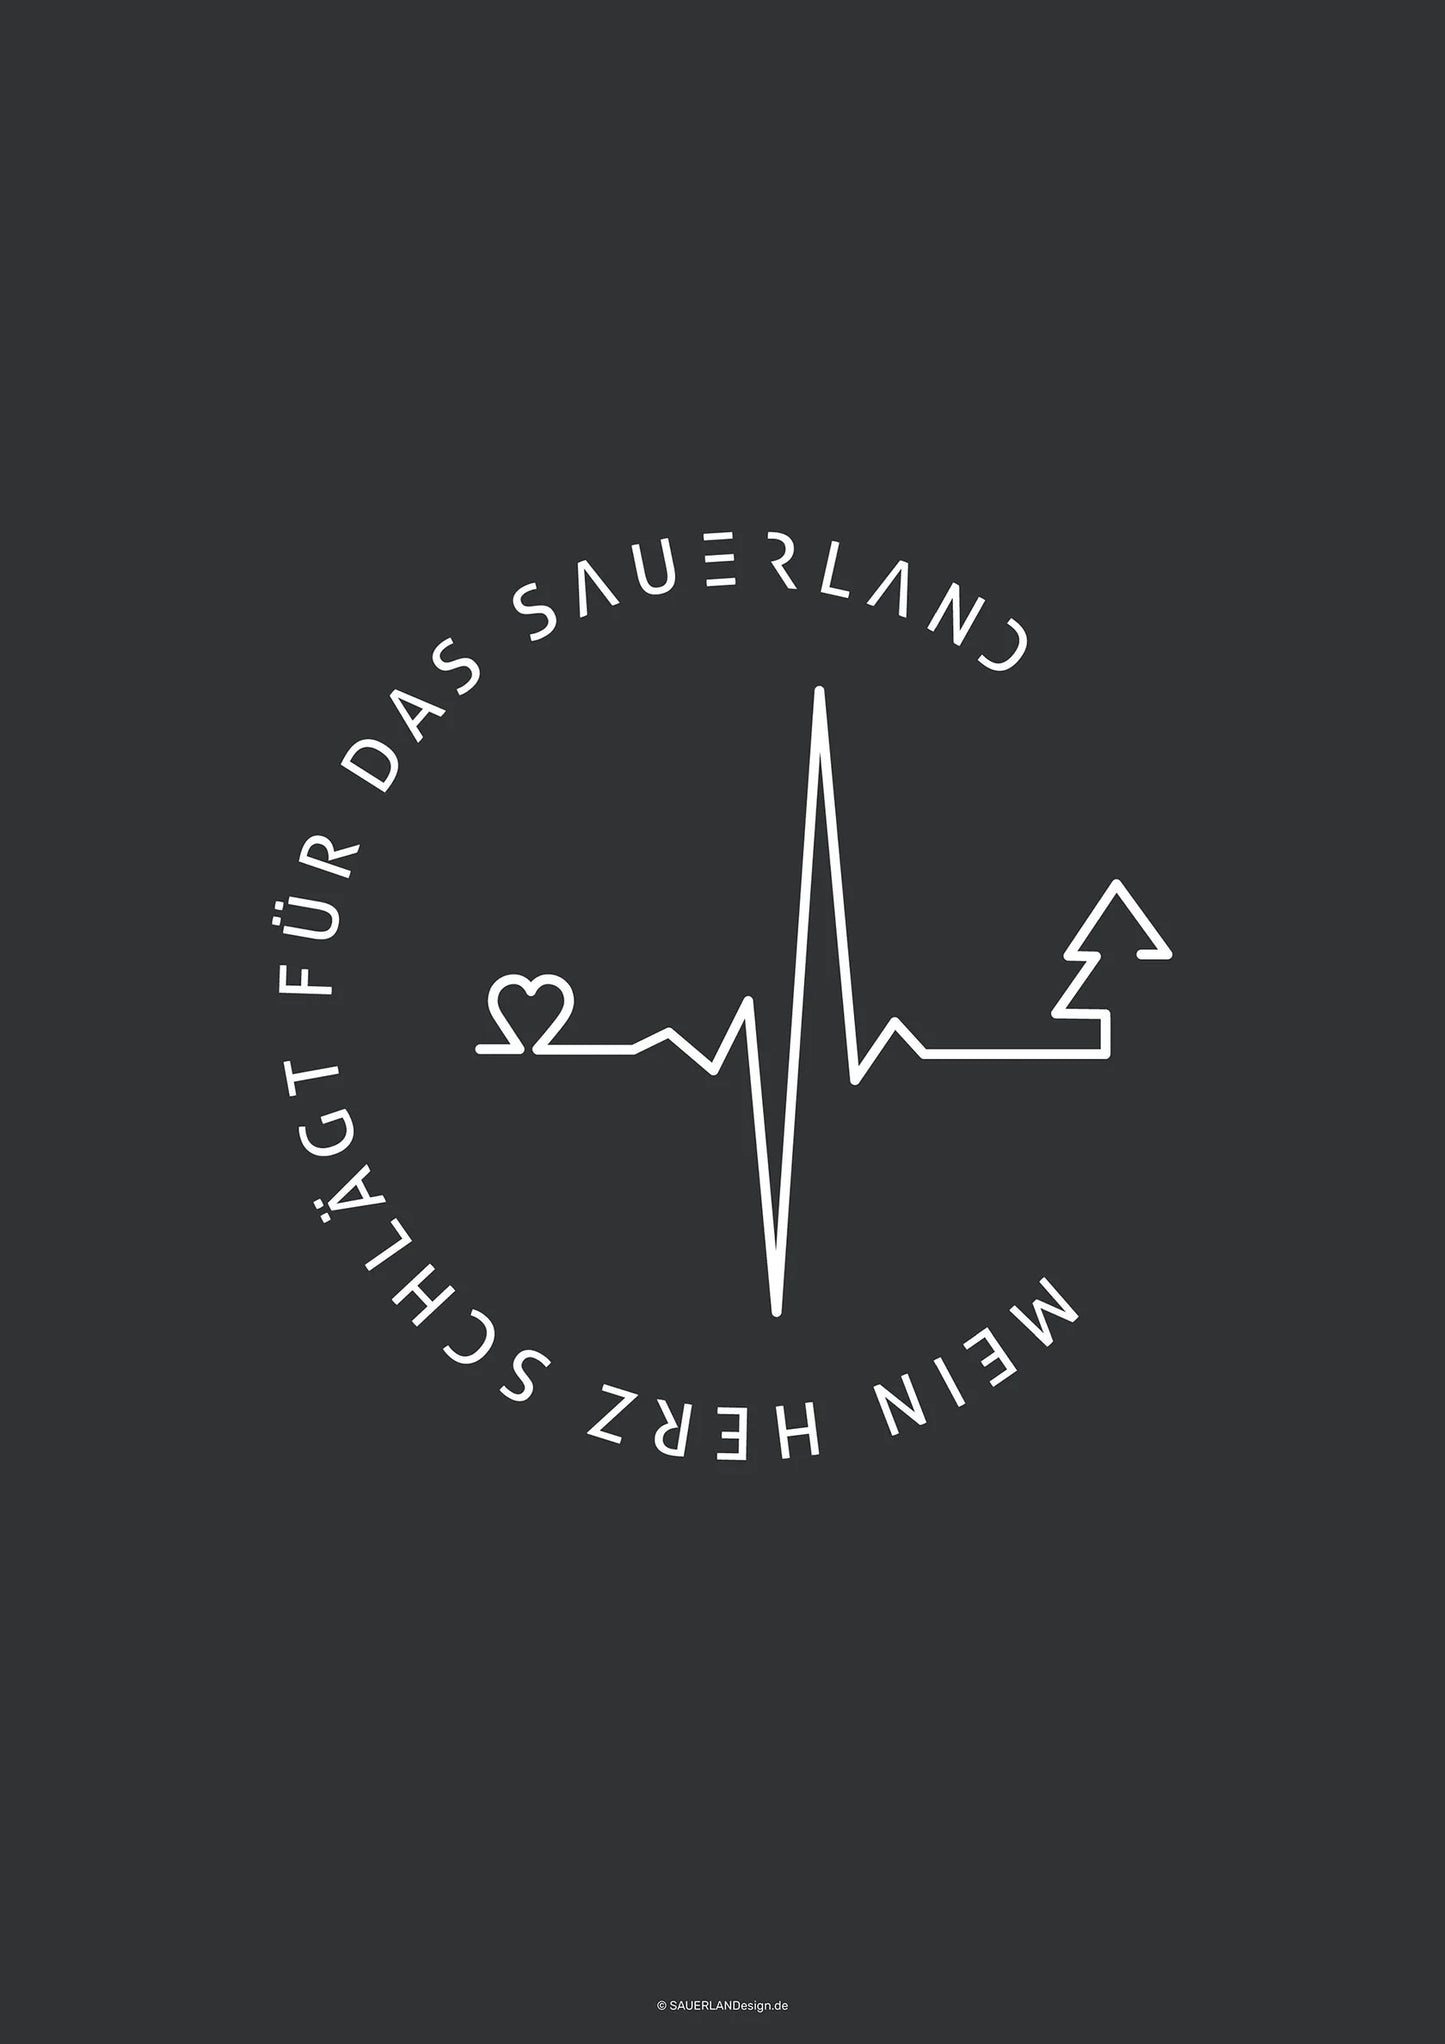 Dunkelgraues Poster mit dem Mein Herz schlägt für das Sauerland Logo in weiß aufgedruckt. Der Schriftzug ist in rund dargestellt. In der Mitte ist eine Herzschlaggrafik zu sehen, die mit einem Herz anfängt und mit einem Tannenbaum endet.